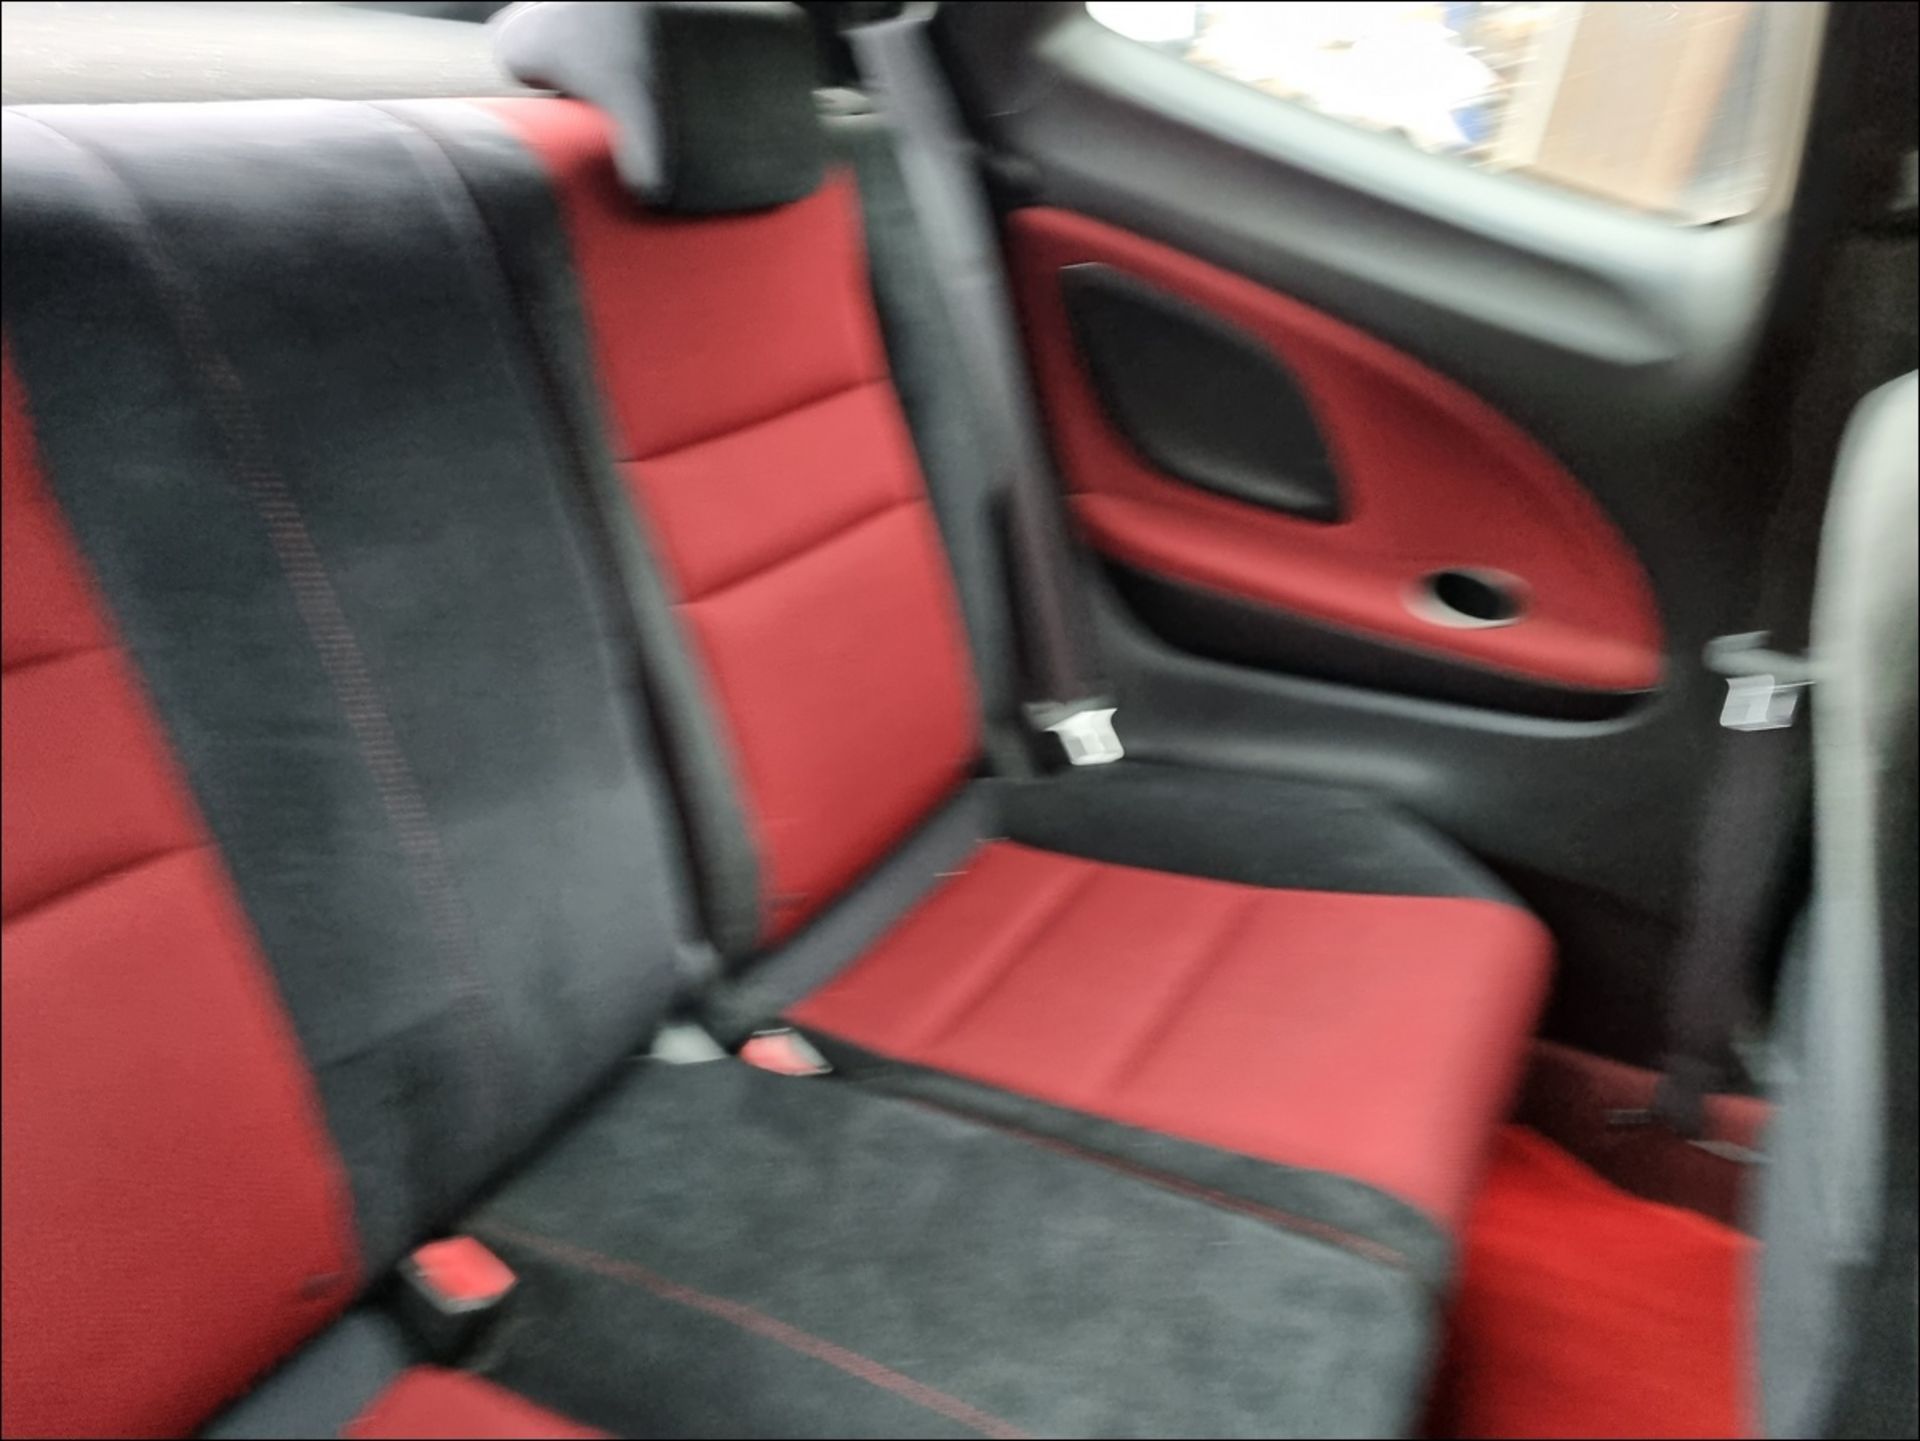 08/58 HONDA CIVIC TYPE-R GT I-VTEC - 1998cc 3dr Hatchback (Red, 75k) - Image 16 of 16